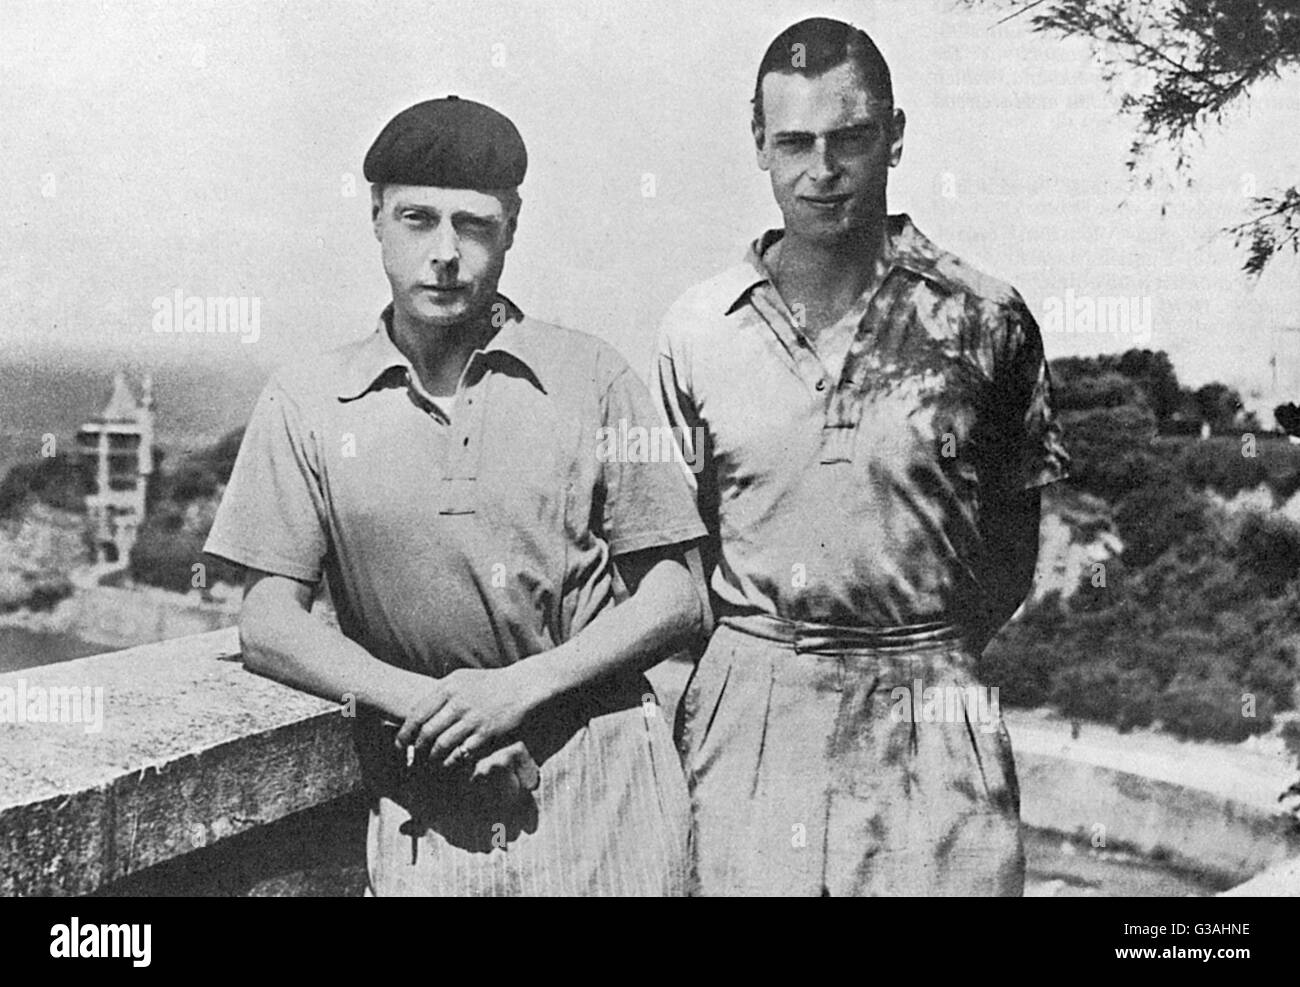 Edward, Príncipe de Gales, más tarde el Rey Eduardo VIII y luego duque de Windsor (1894 - 1972), en la foto con su hermano, el Príncipe George, más tarde Duque de Kent (1902 - 1942) durante unas vacaciones en la Riviera en Biarritz, Francia, en 1932. Ambos hermanos real ar Foto de stock